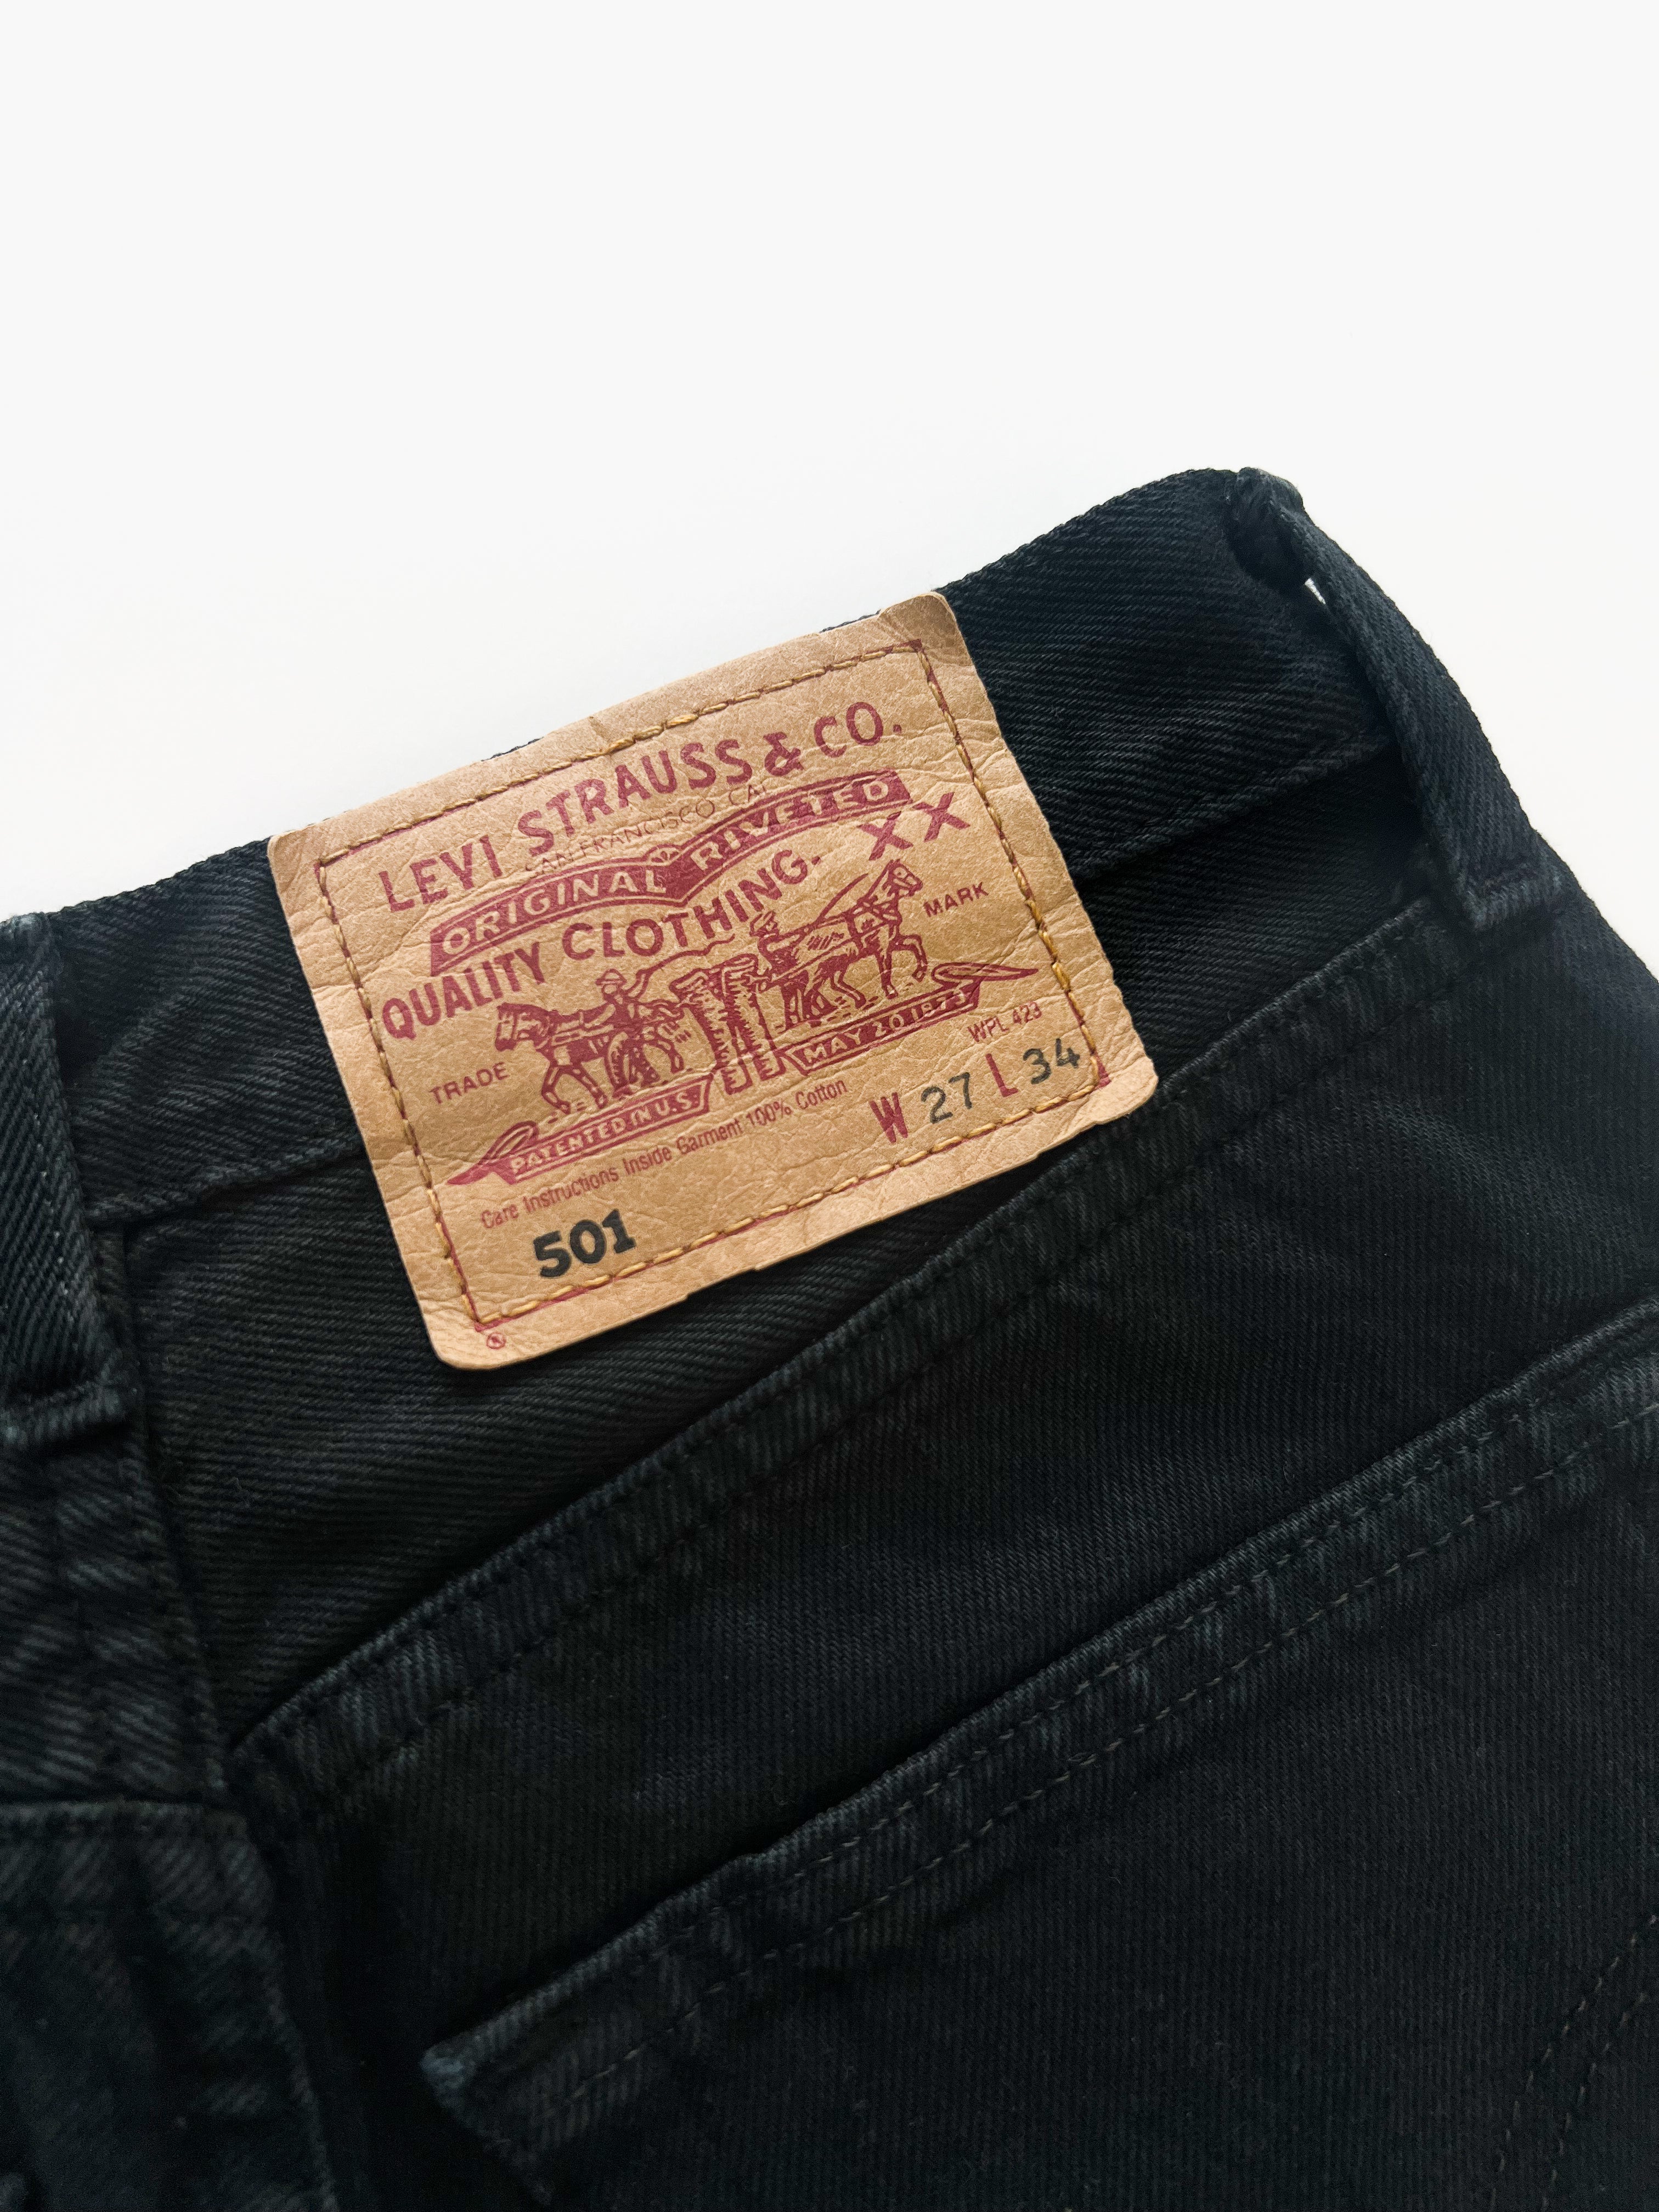 Vintage Levi’s 501 Jeans / W27 L34